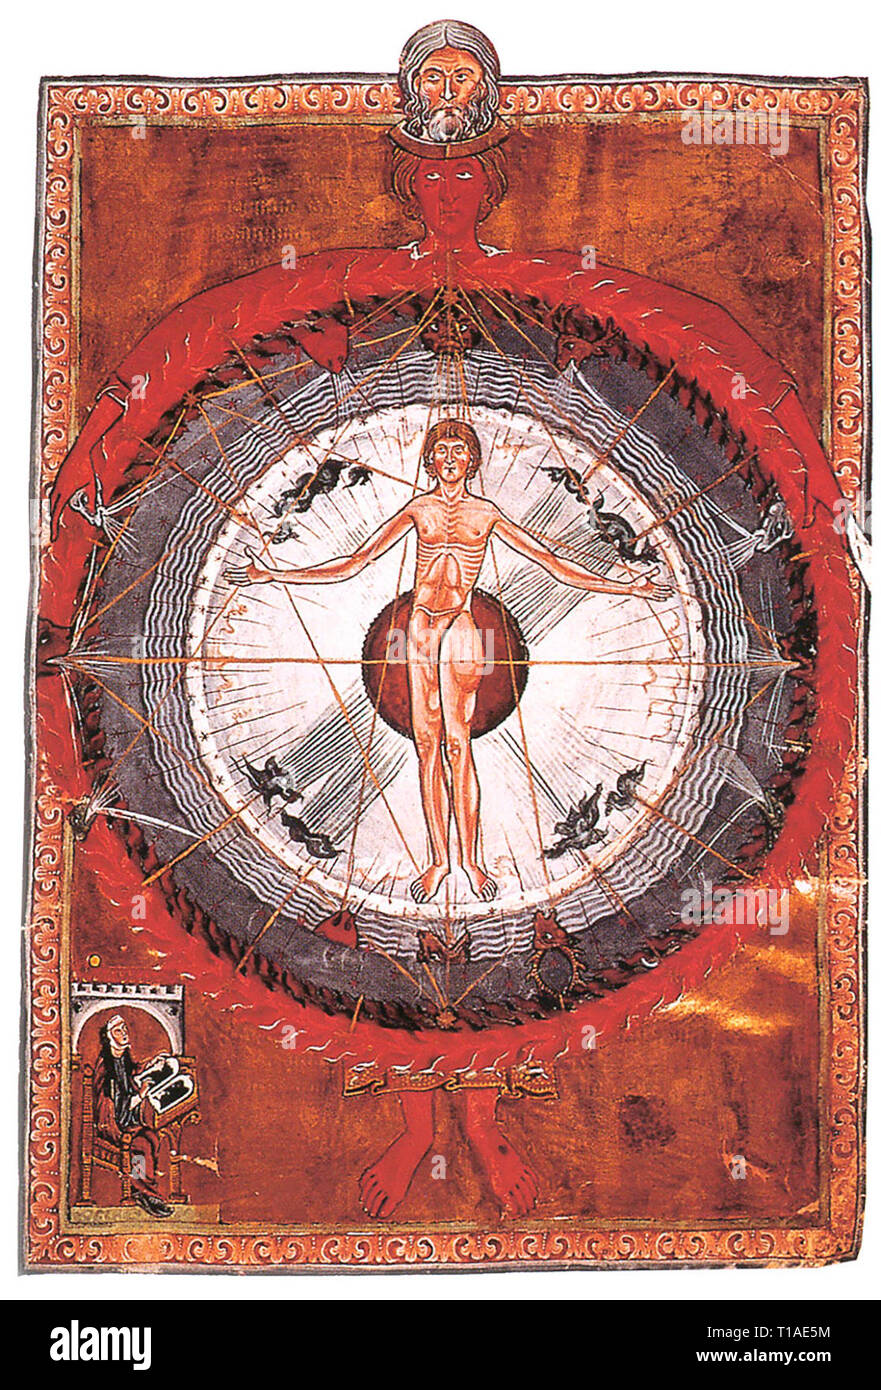 Liber Divinorum Operum - The Universal Man, Liber Divinorum Operum of St. Hildegard of Bingen, 1165 Stock Photo